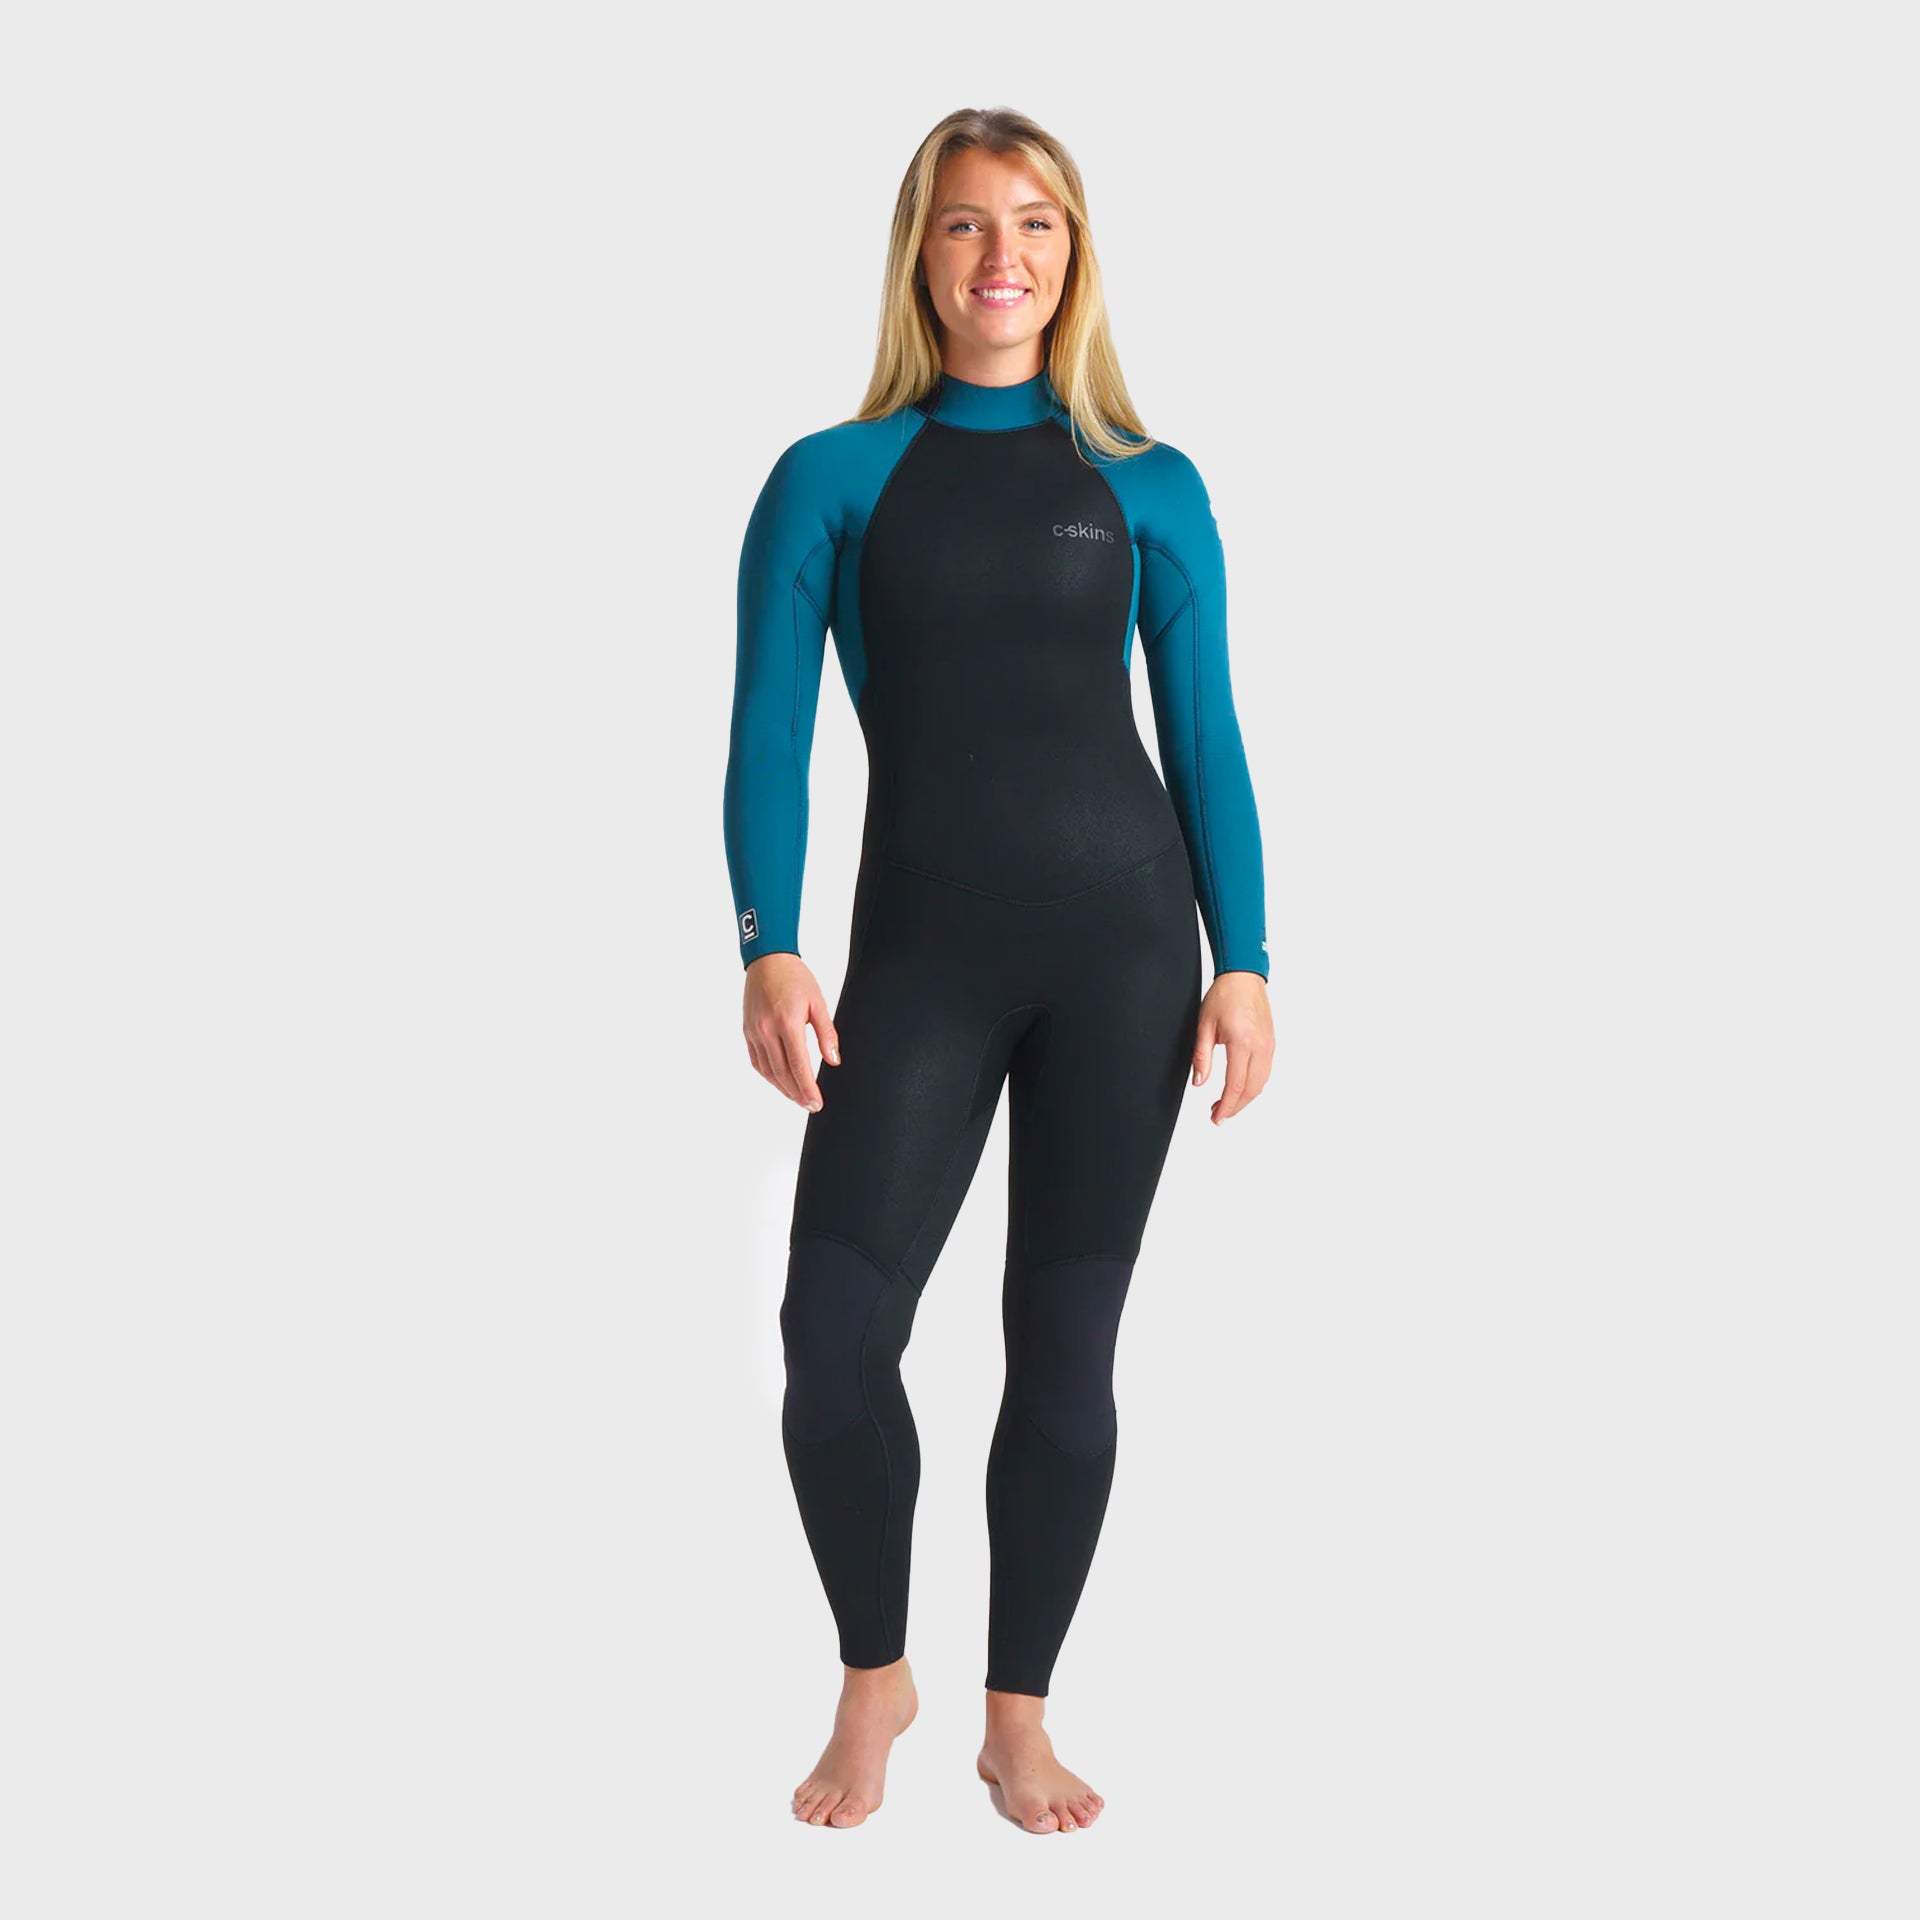 C-Skins Surflite 5/4/3 Women's Back Zip Steamer Wetsuit - Black/Blue Marine - ManGo Surfing